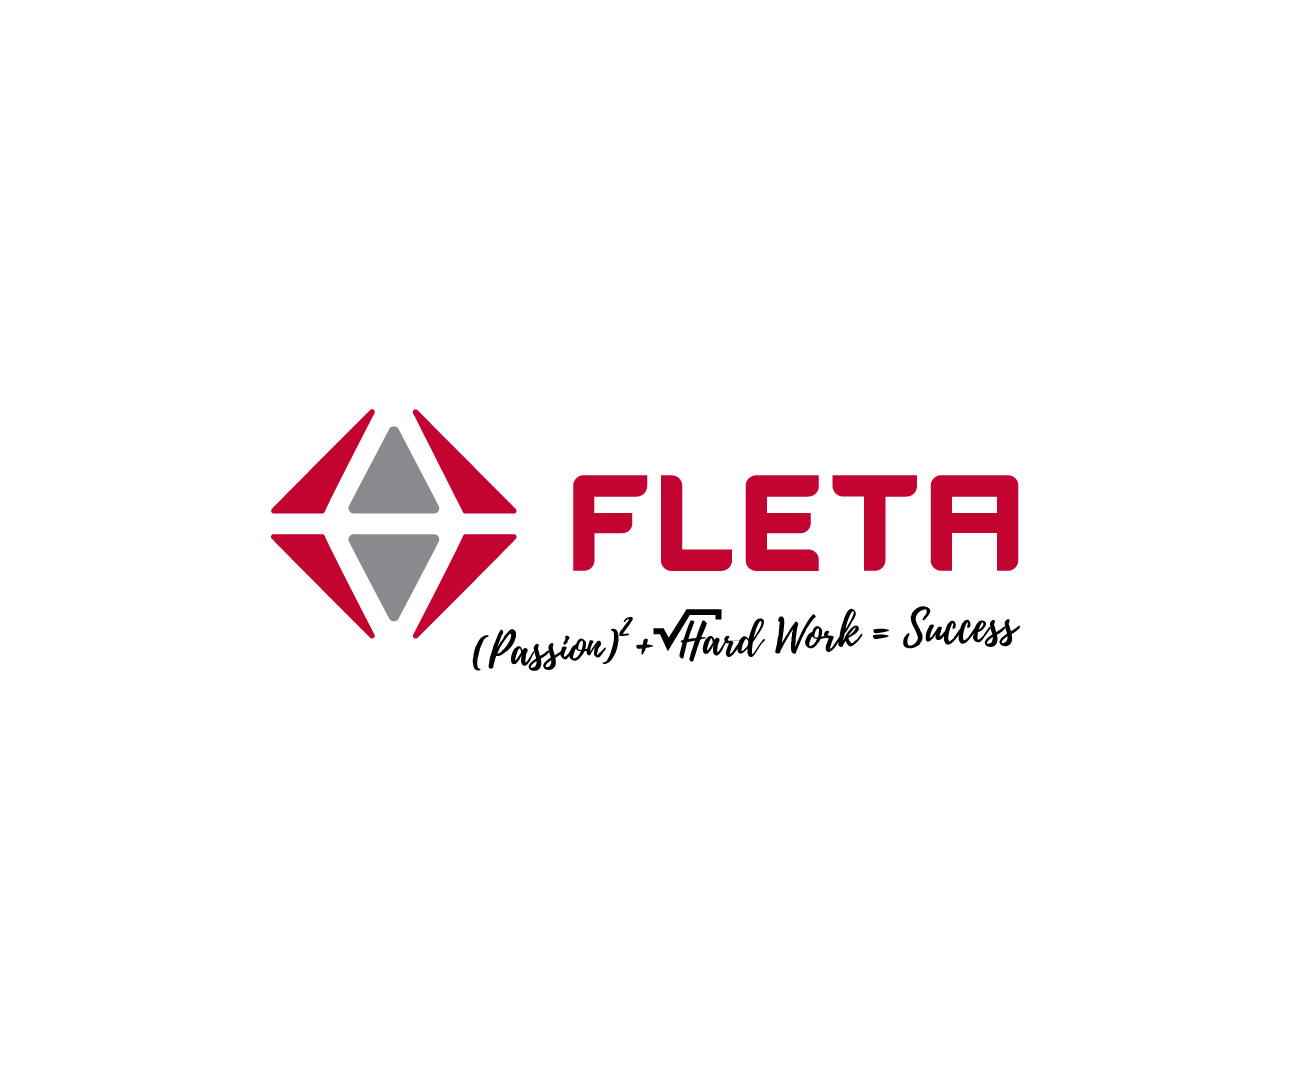 nuevo-logo-fleta-1